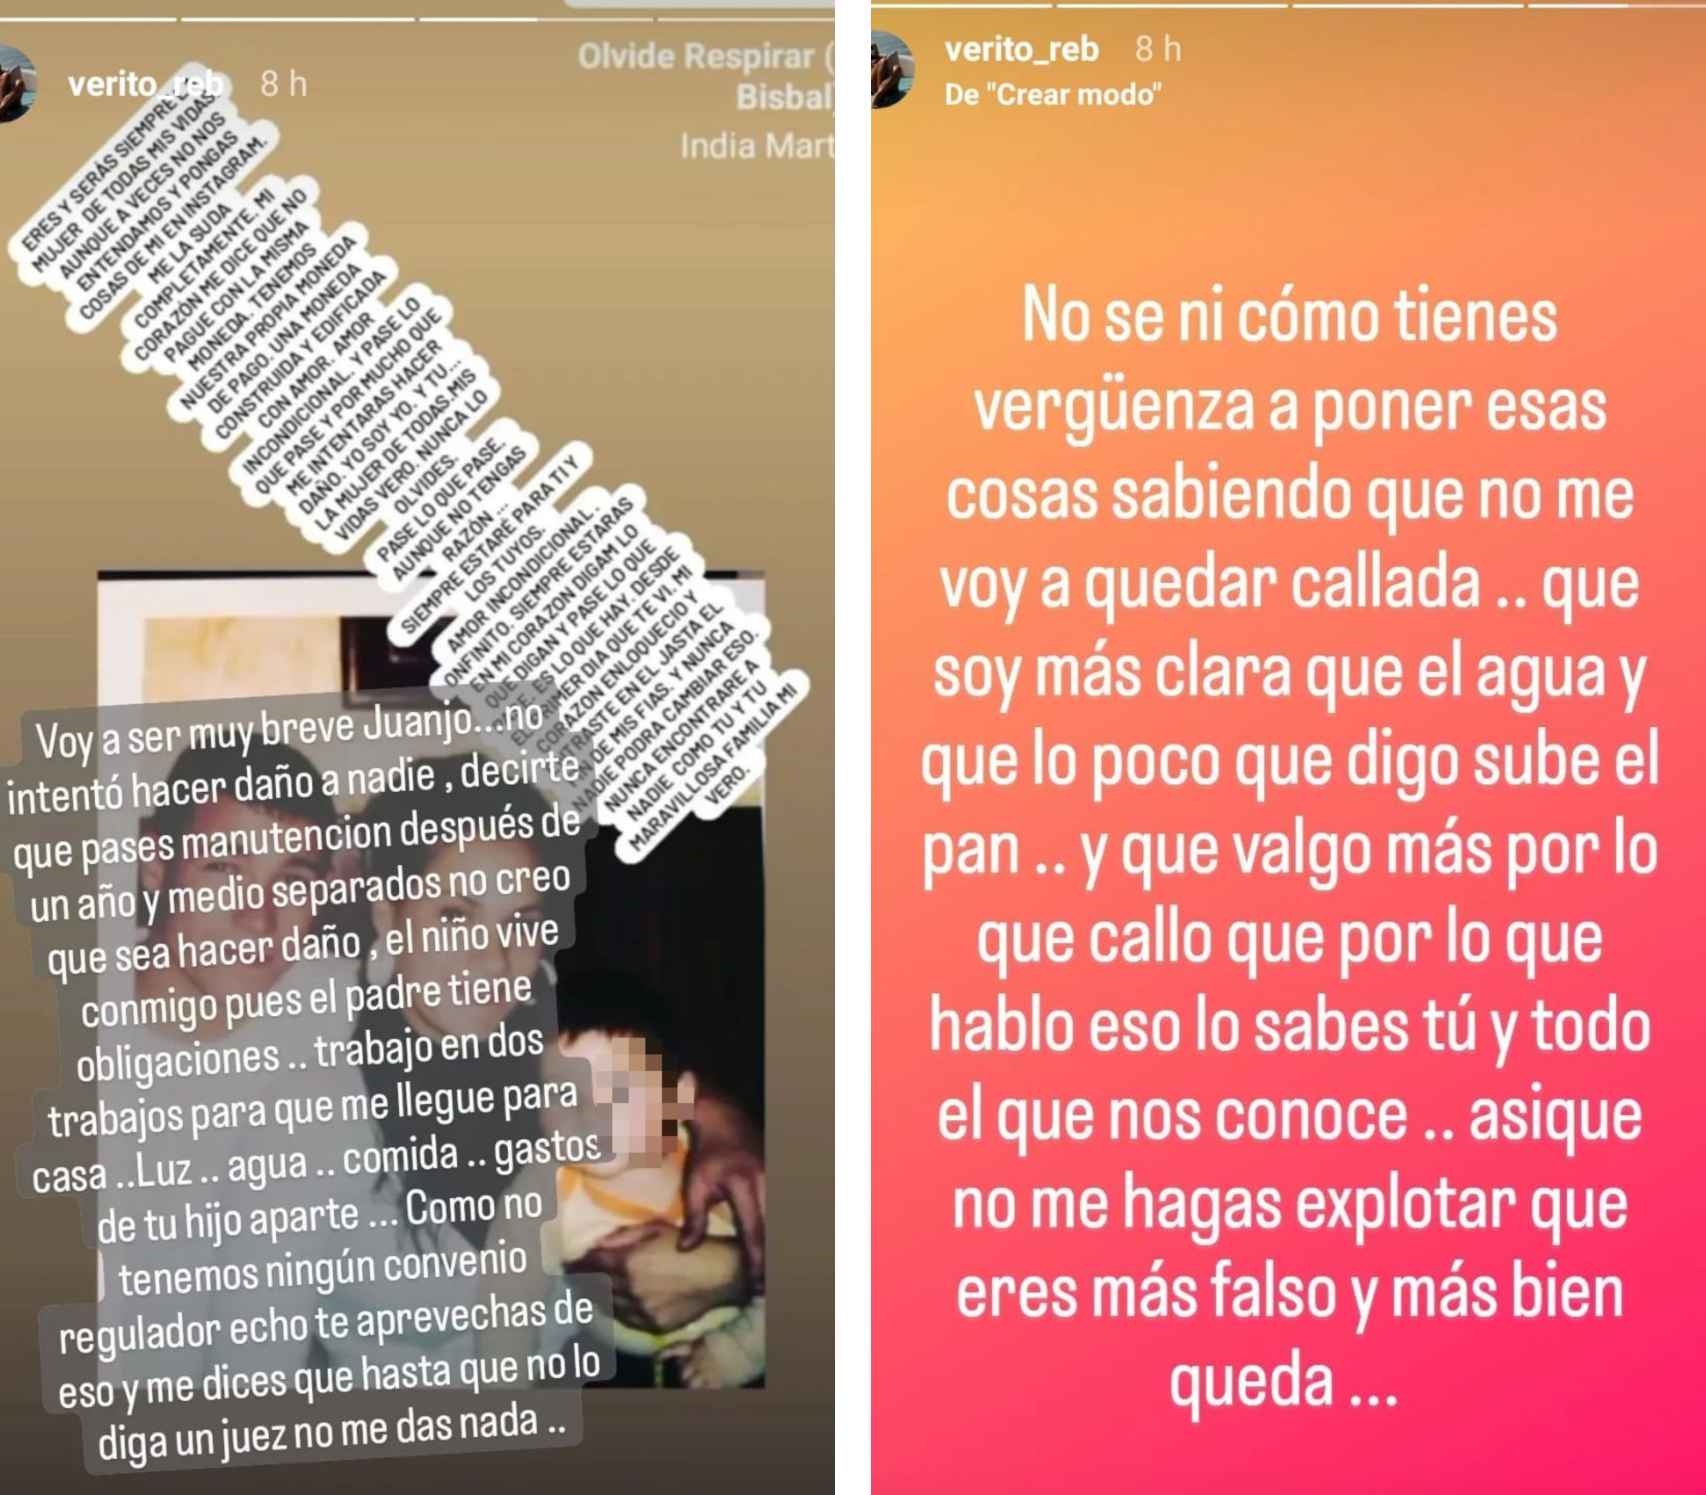 Los dos mensajes de Verónica Rebollo para Juan José Ballesta compartidos en su perfil de Instagram.